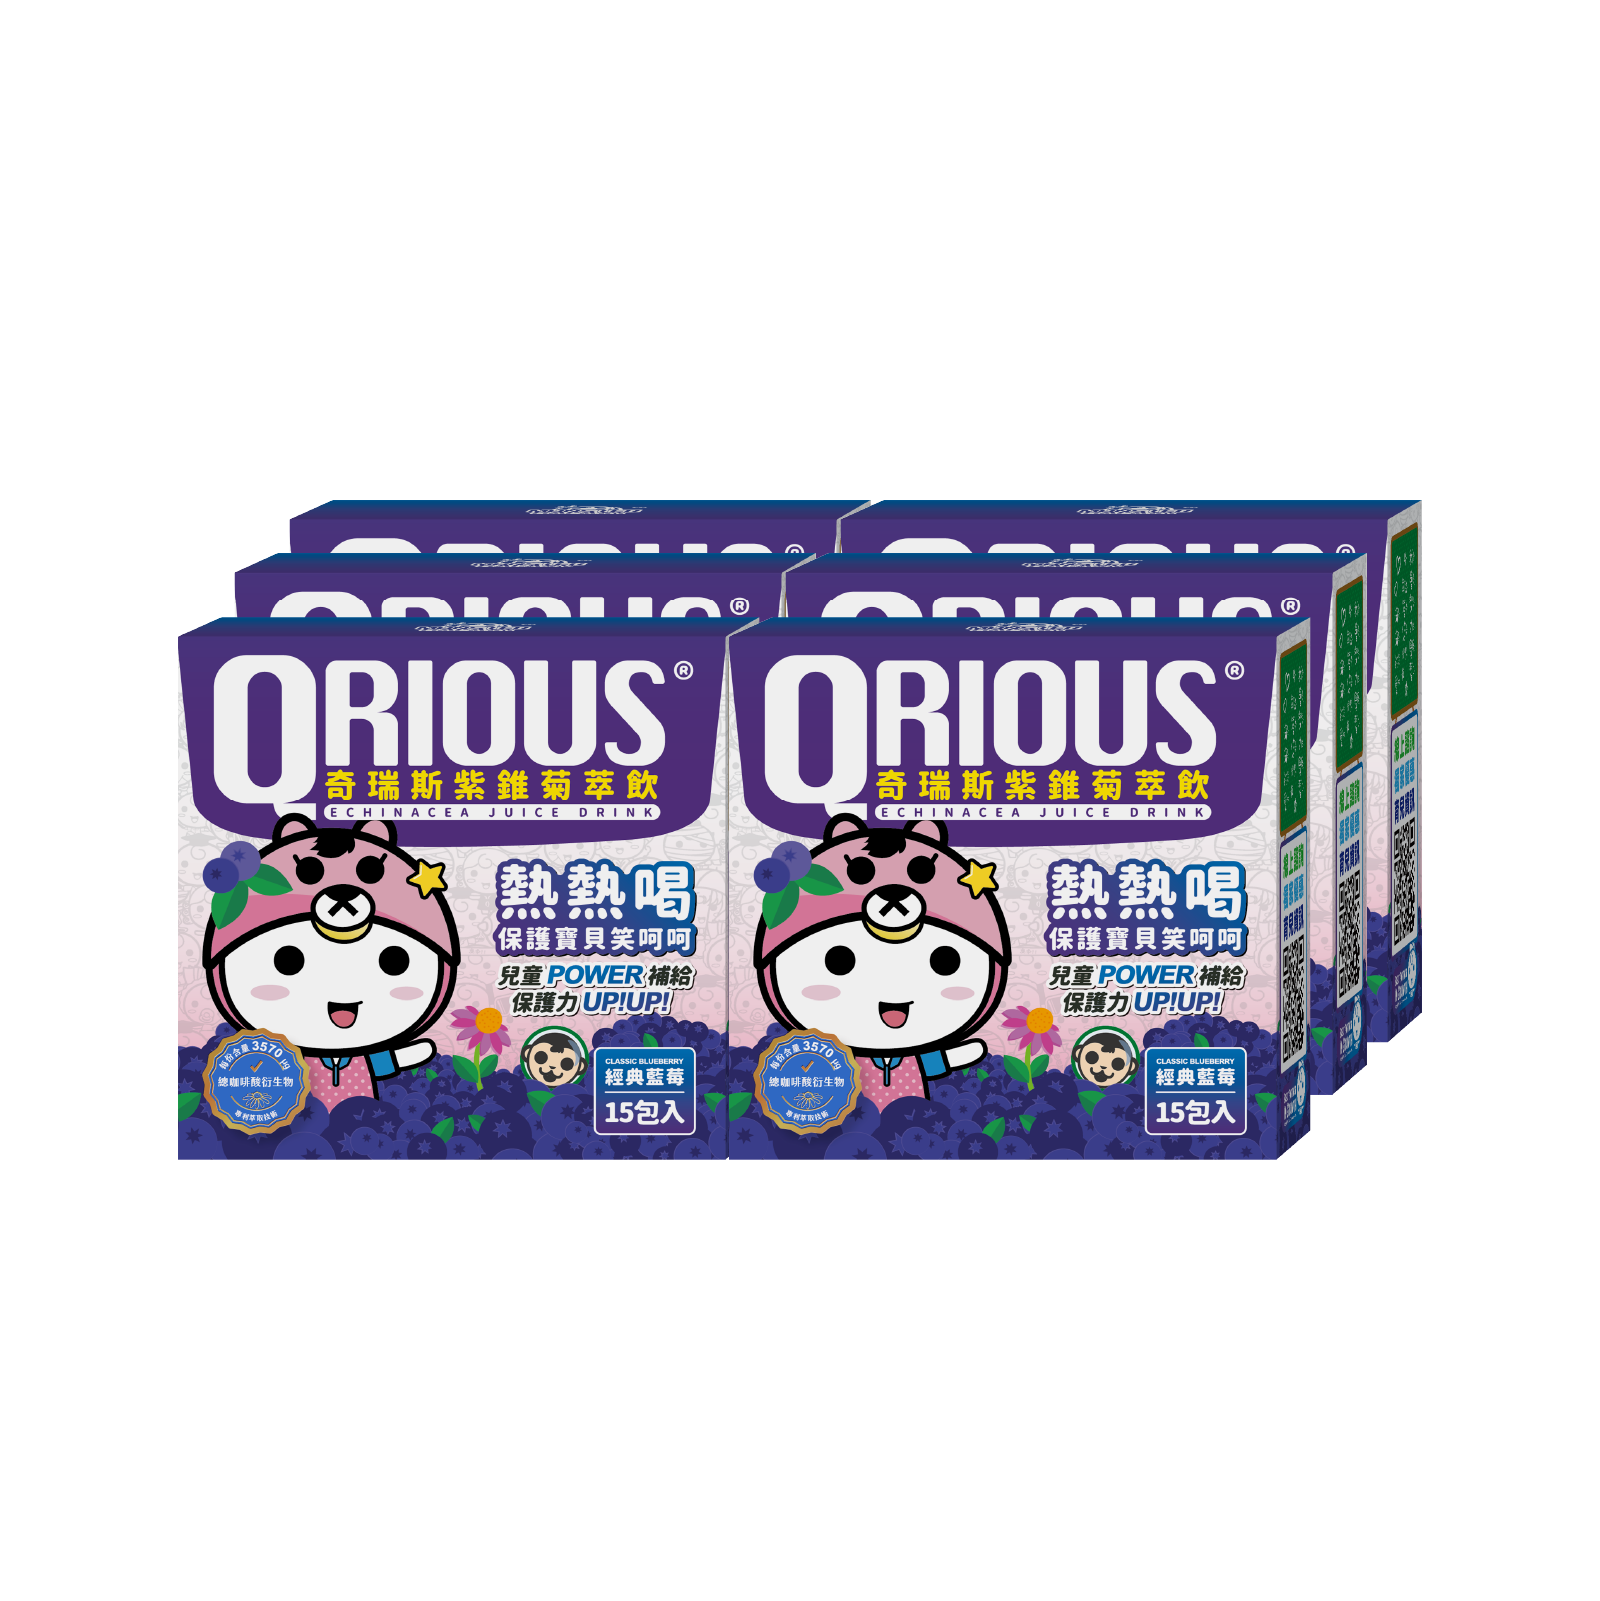 【領券再折扣】調整體質QRIOUS®奇瑞斯紫錐菊/紫錐花萃飲-藍莓(6盒)